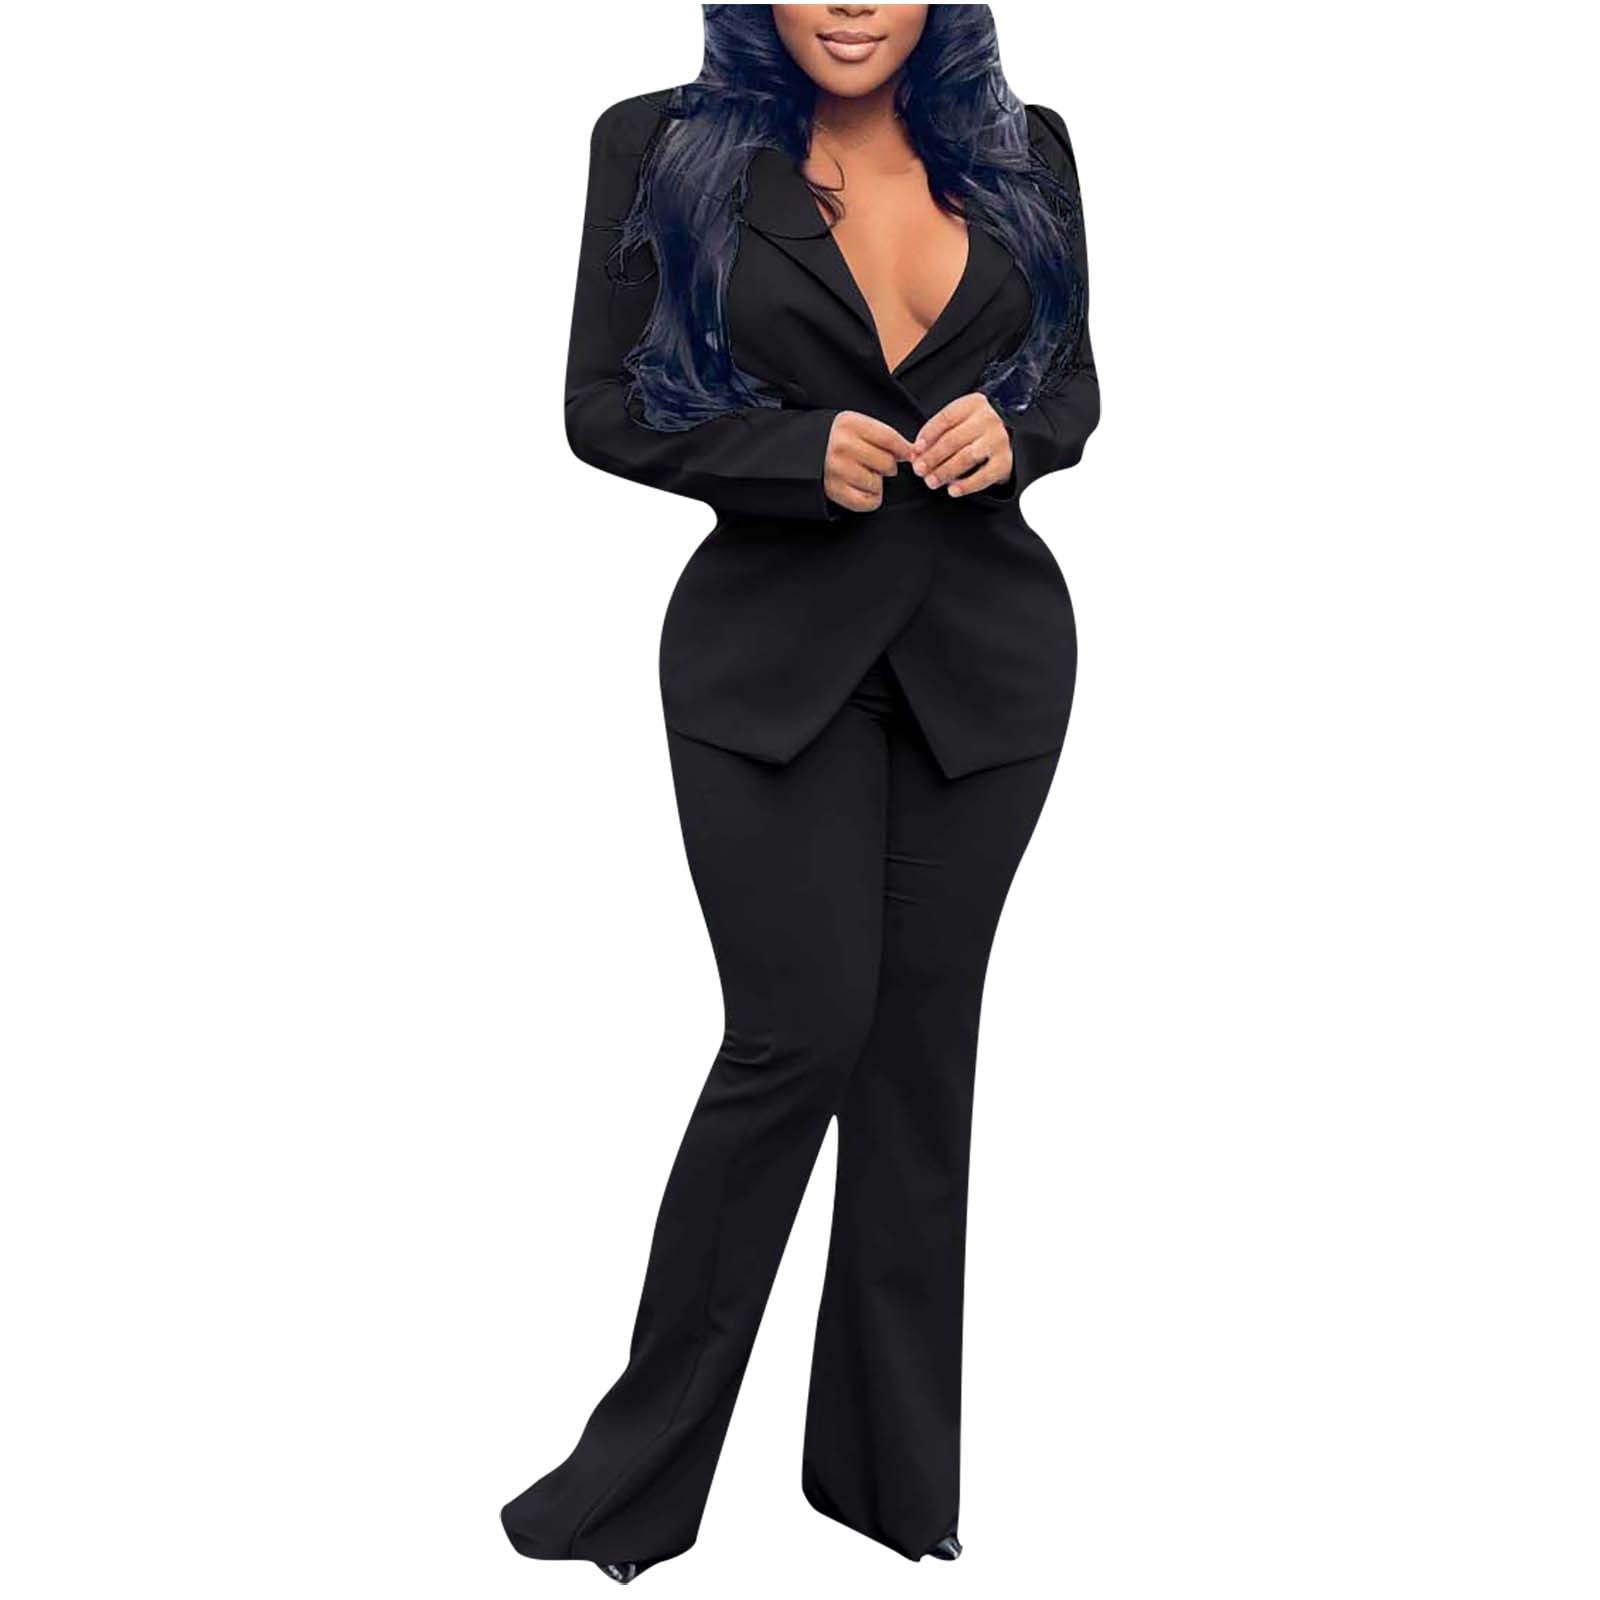 Black Two-piece Women Pants Suit, FashionByTeresa